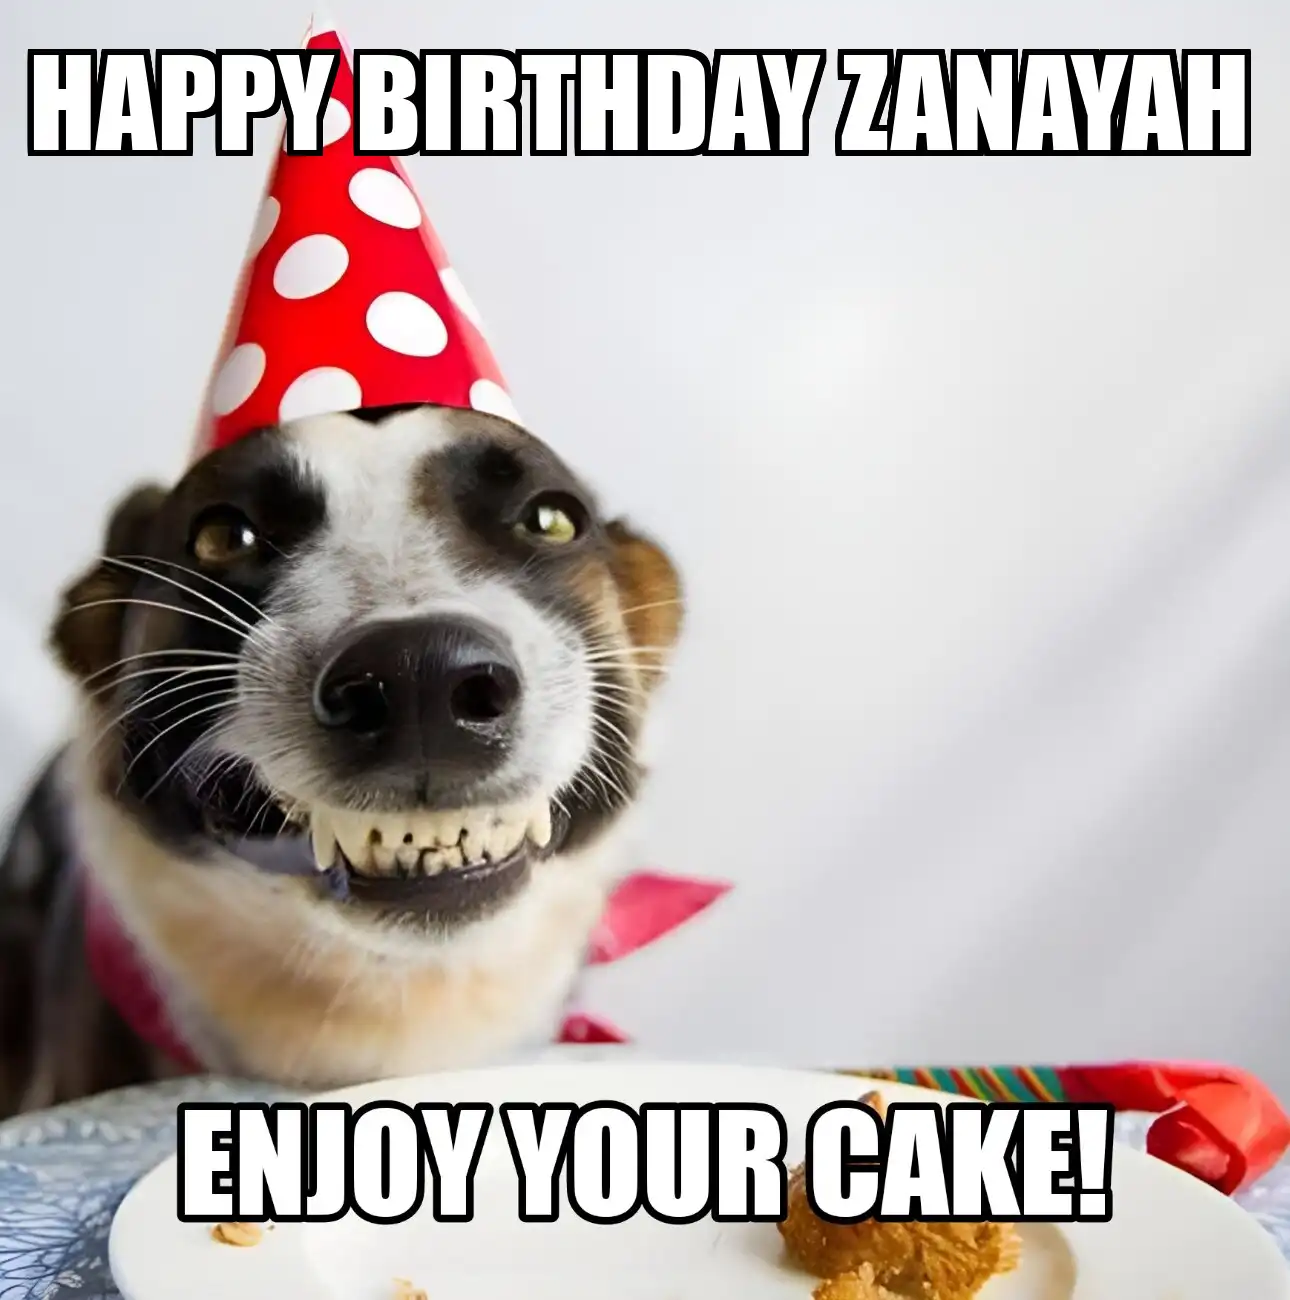 Happy Birthday Zanayah Enjoy Your Cake Dog Meme